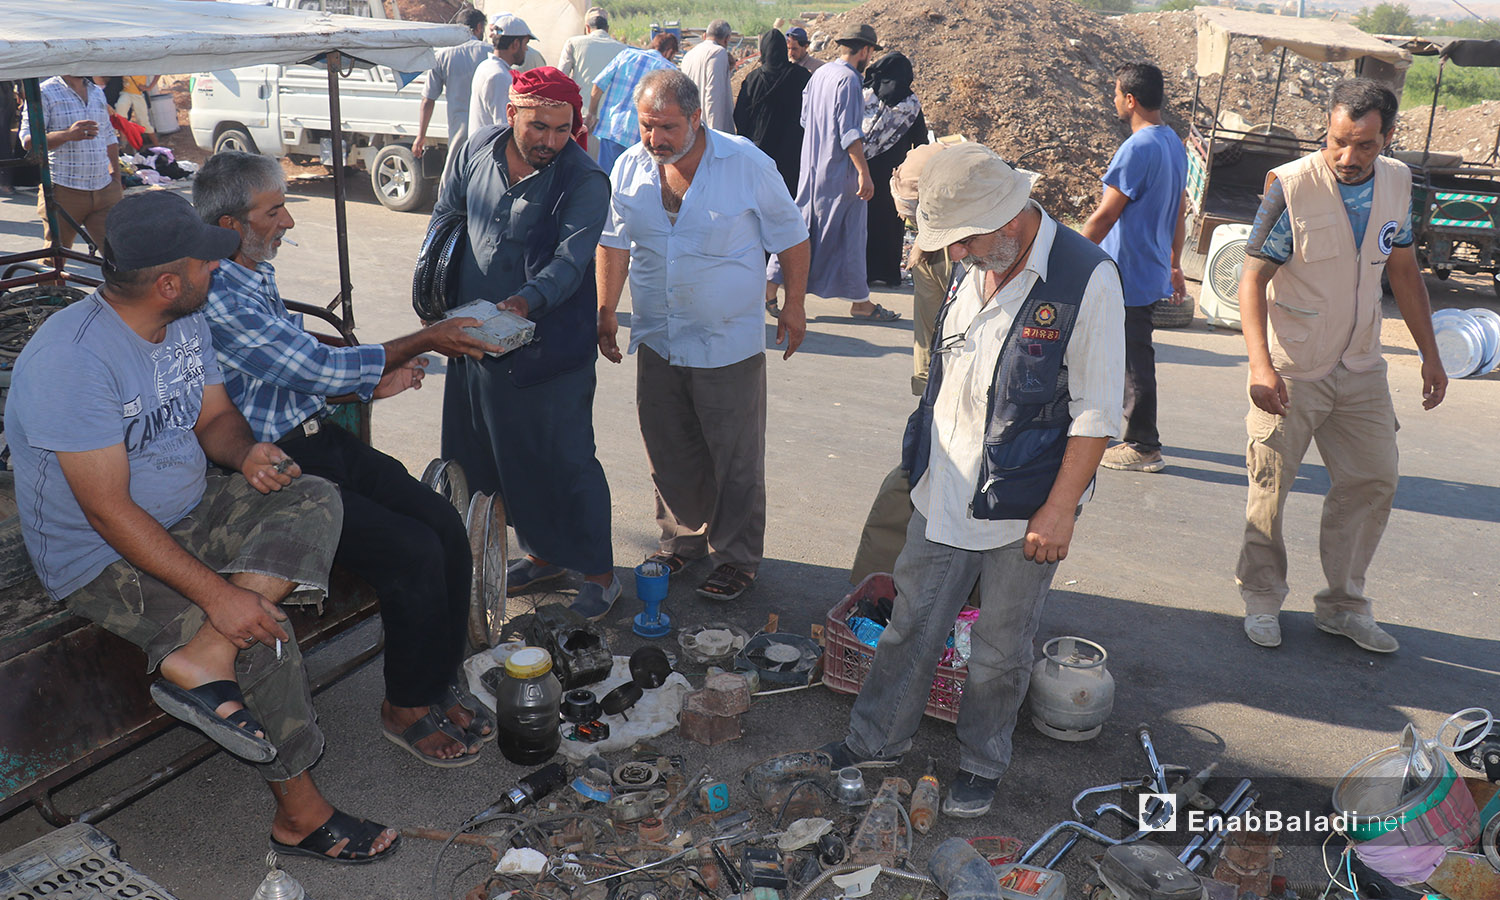 بسطة لبيع الأدوات المستعملة في سوق الجمعة بمدينة الرقة - 8 آب 2020 (عنب بلدي/عبد العزيز الصالح)